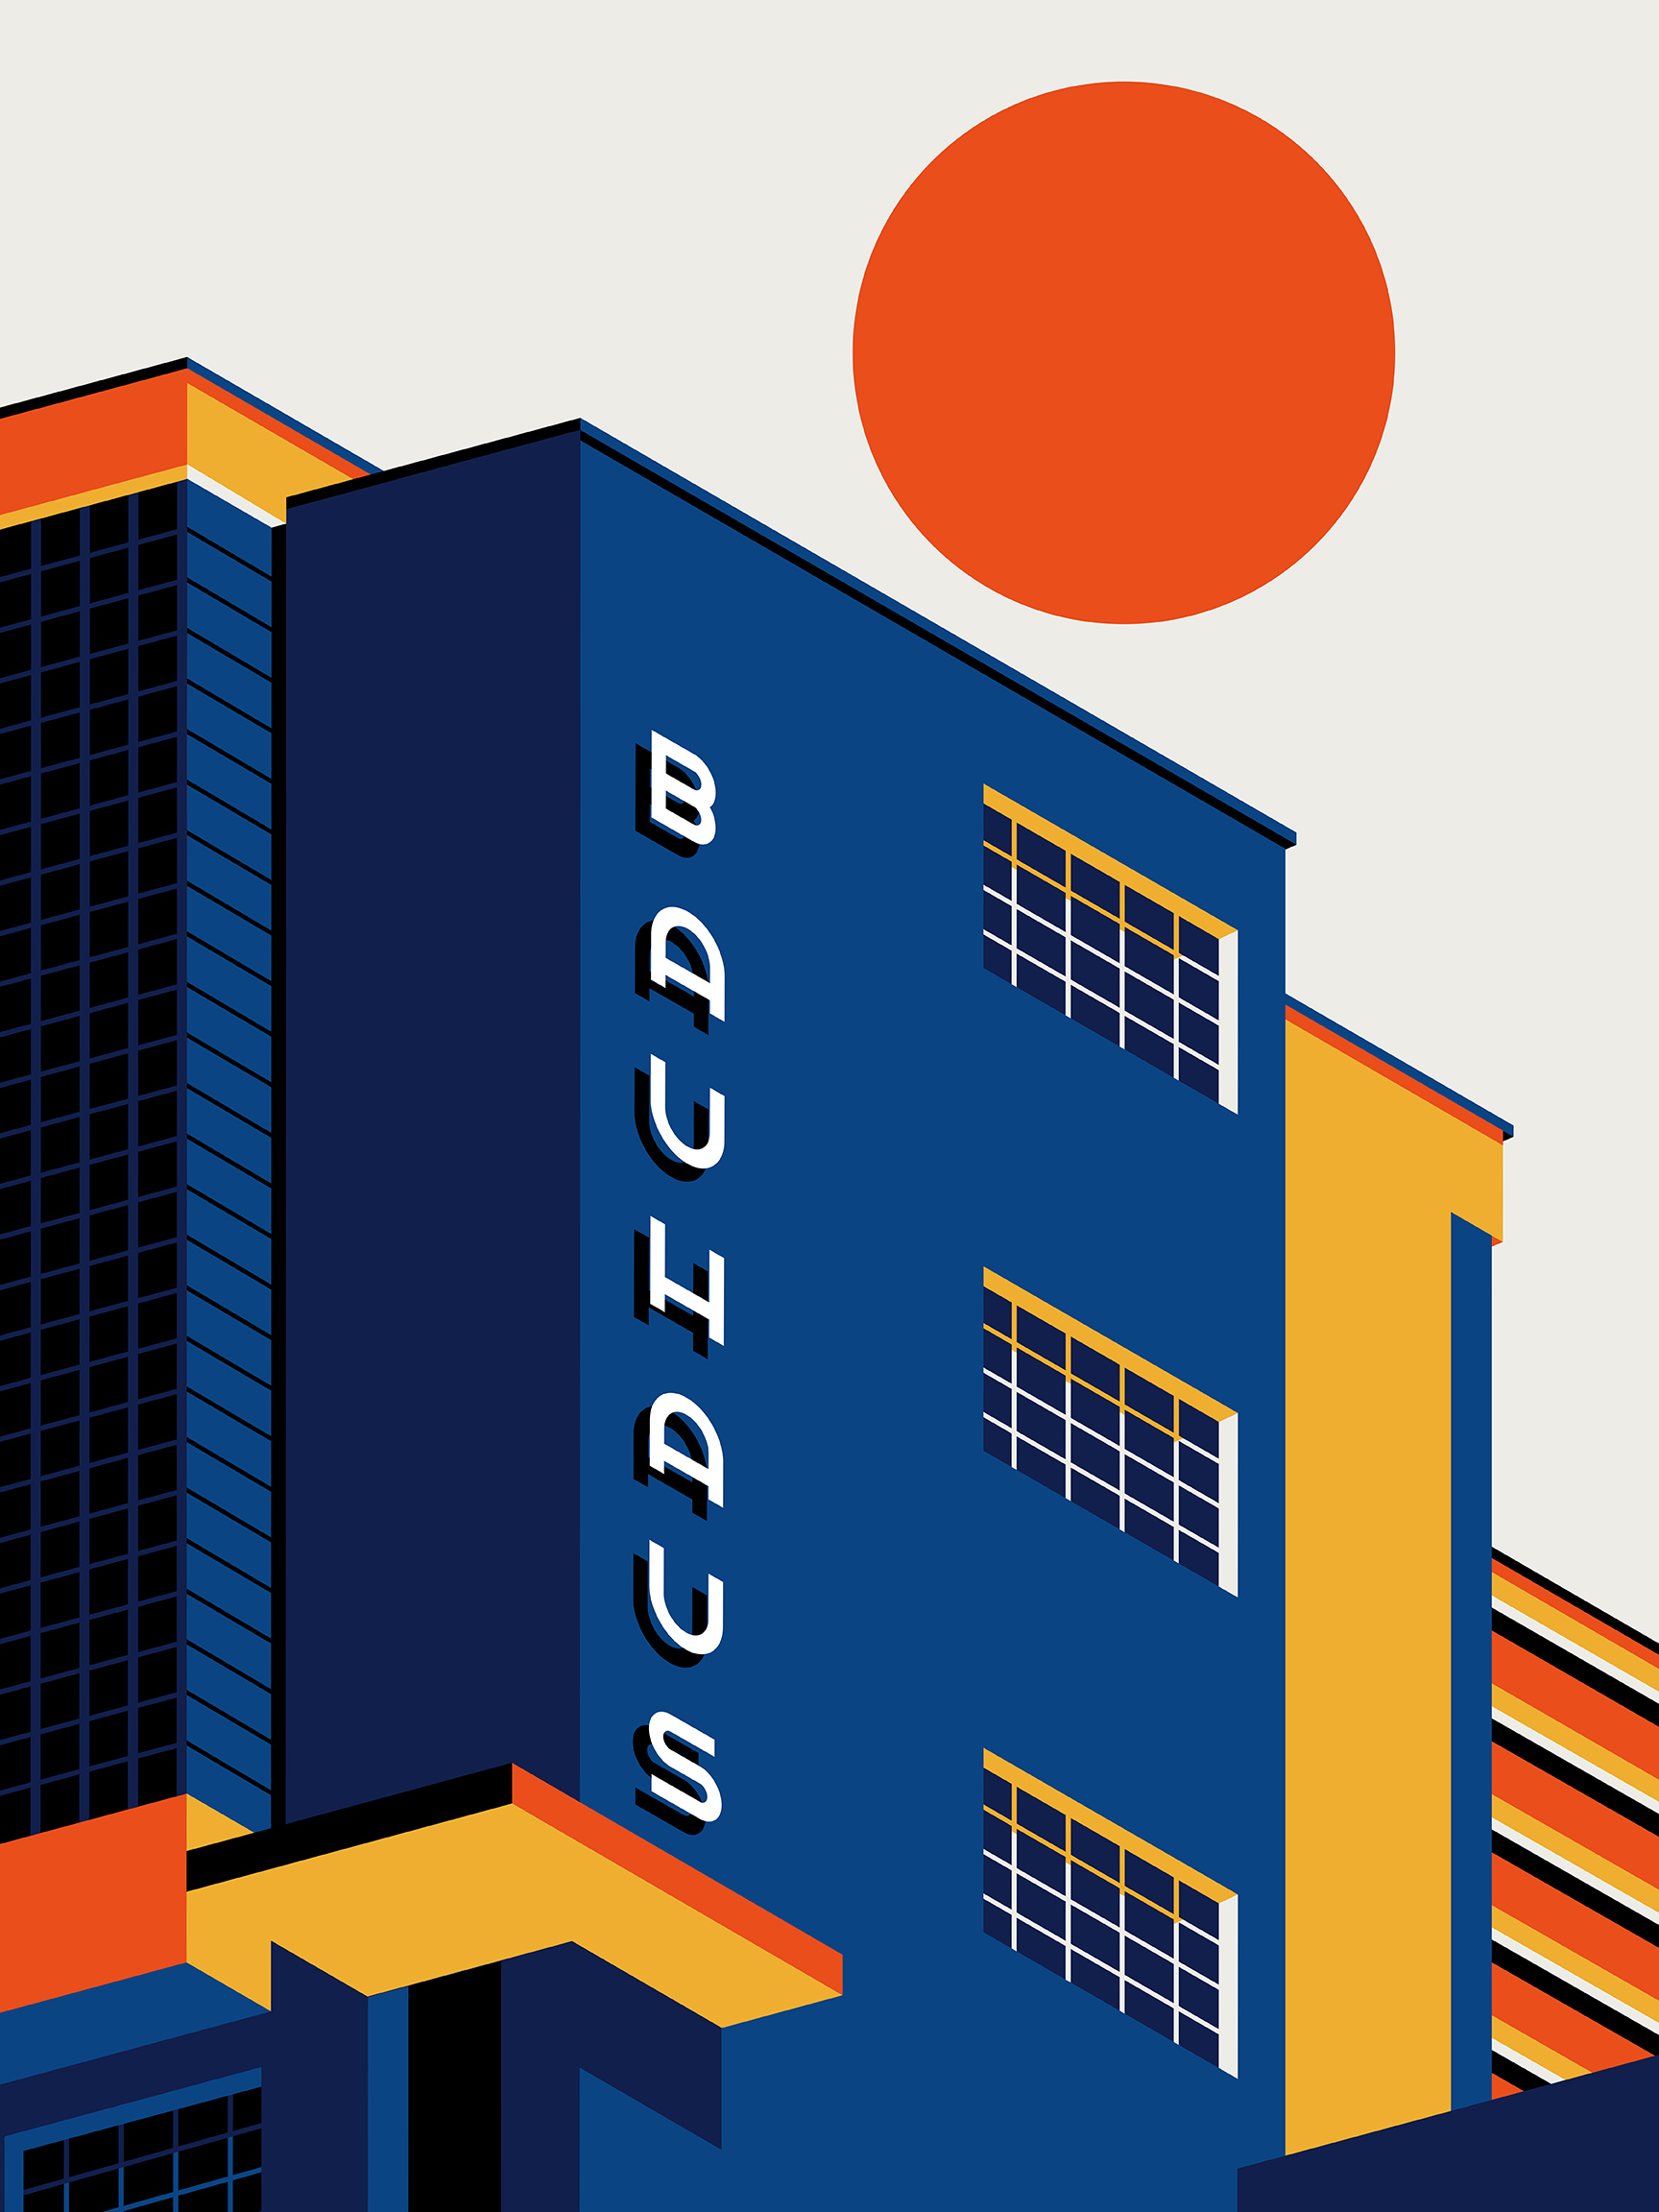 Bauhaus inspired prints